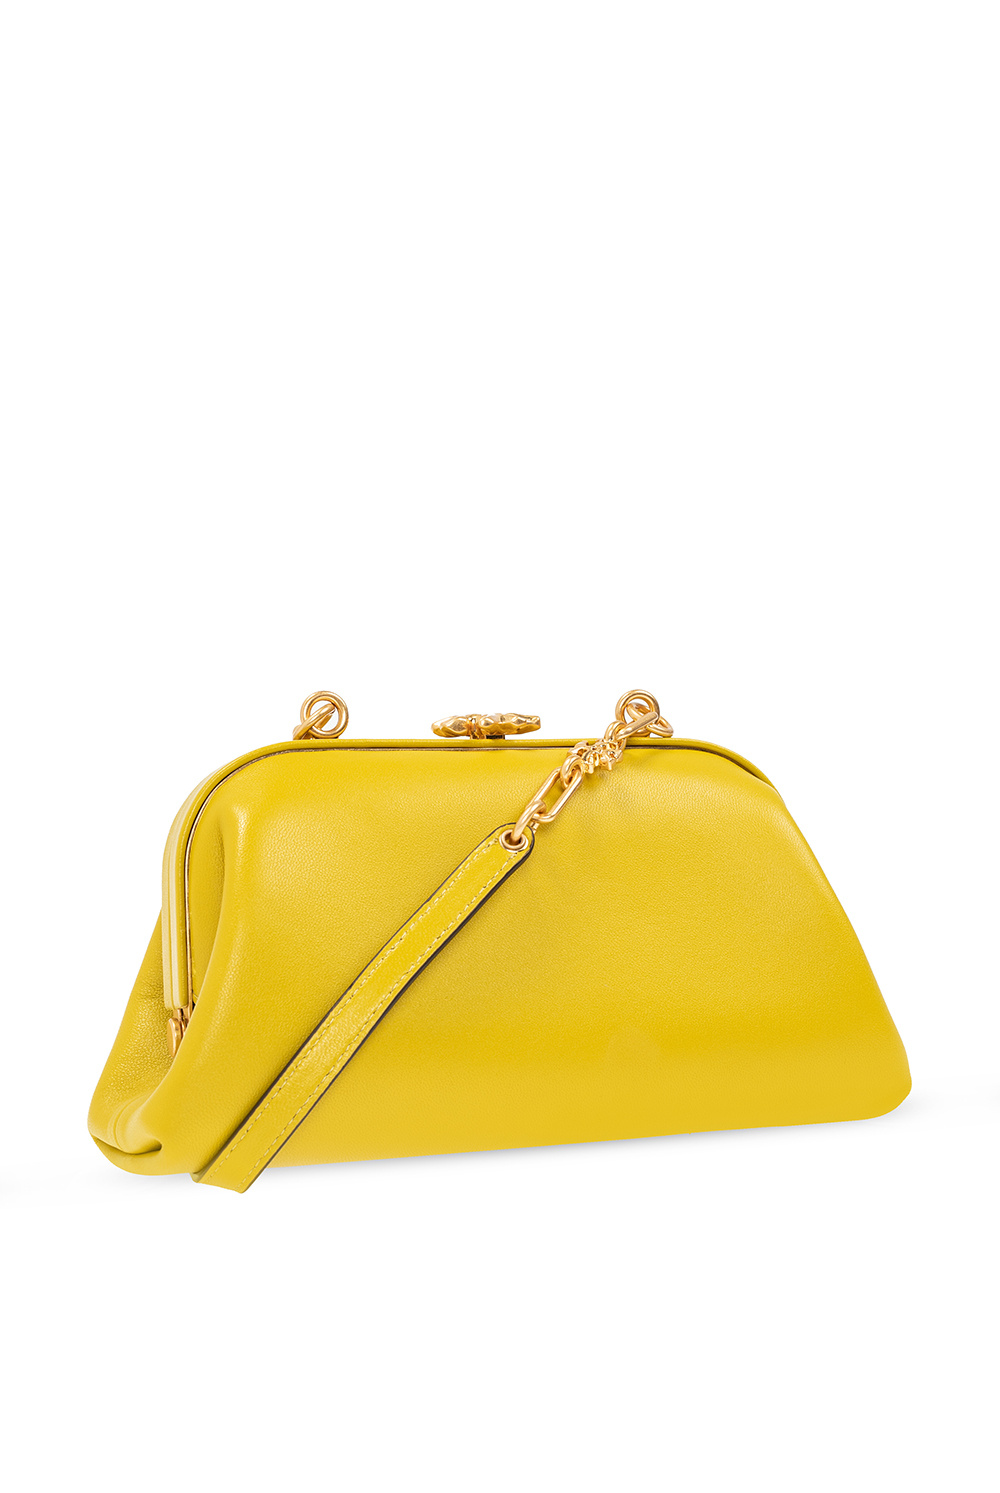 Tory Burch 'Cleo' shoulder bag | Women's Bags | Vitkac